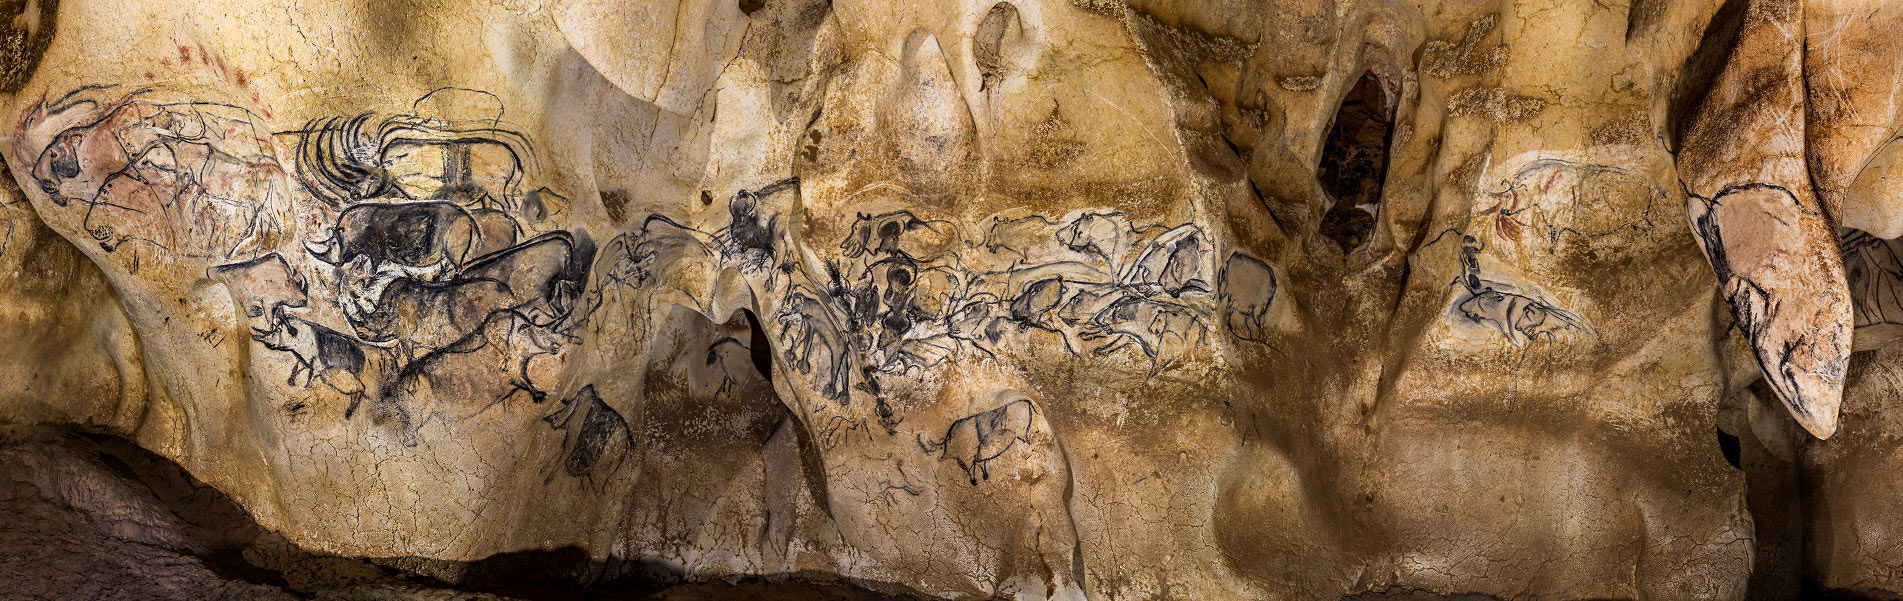 Le grand panneau des Lions de la grotte Chauvet